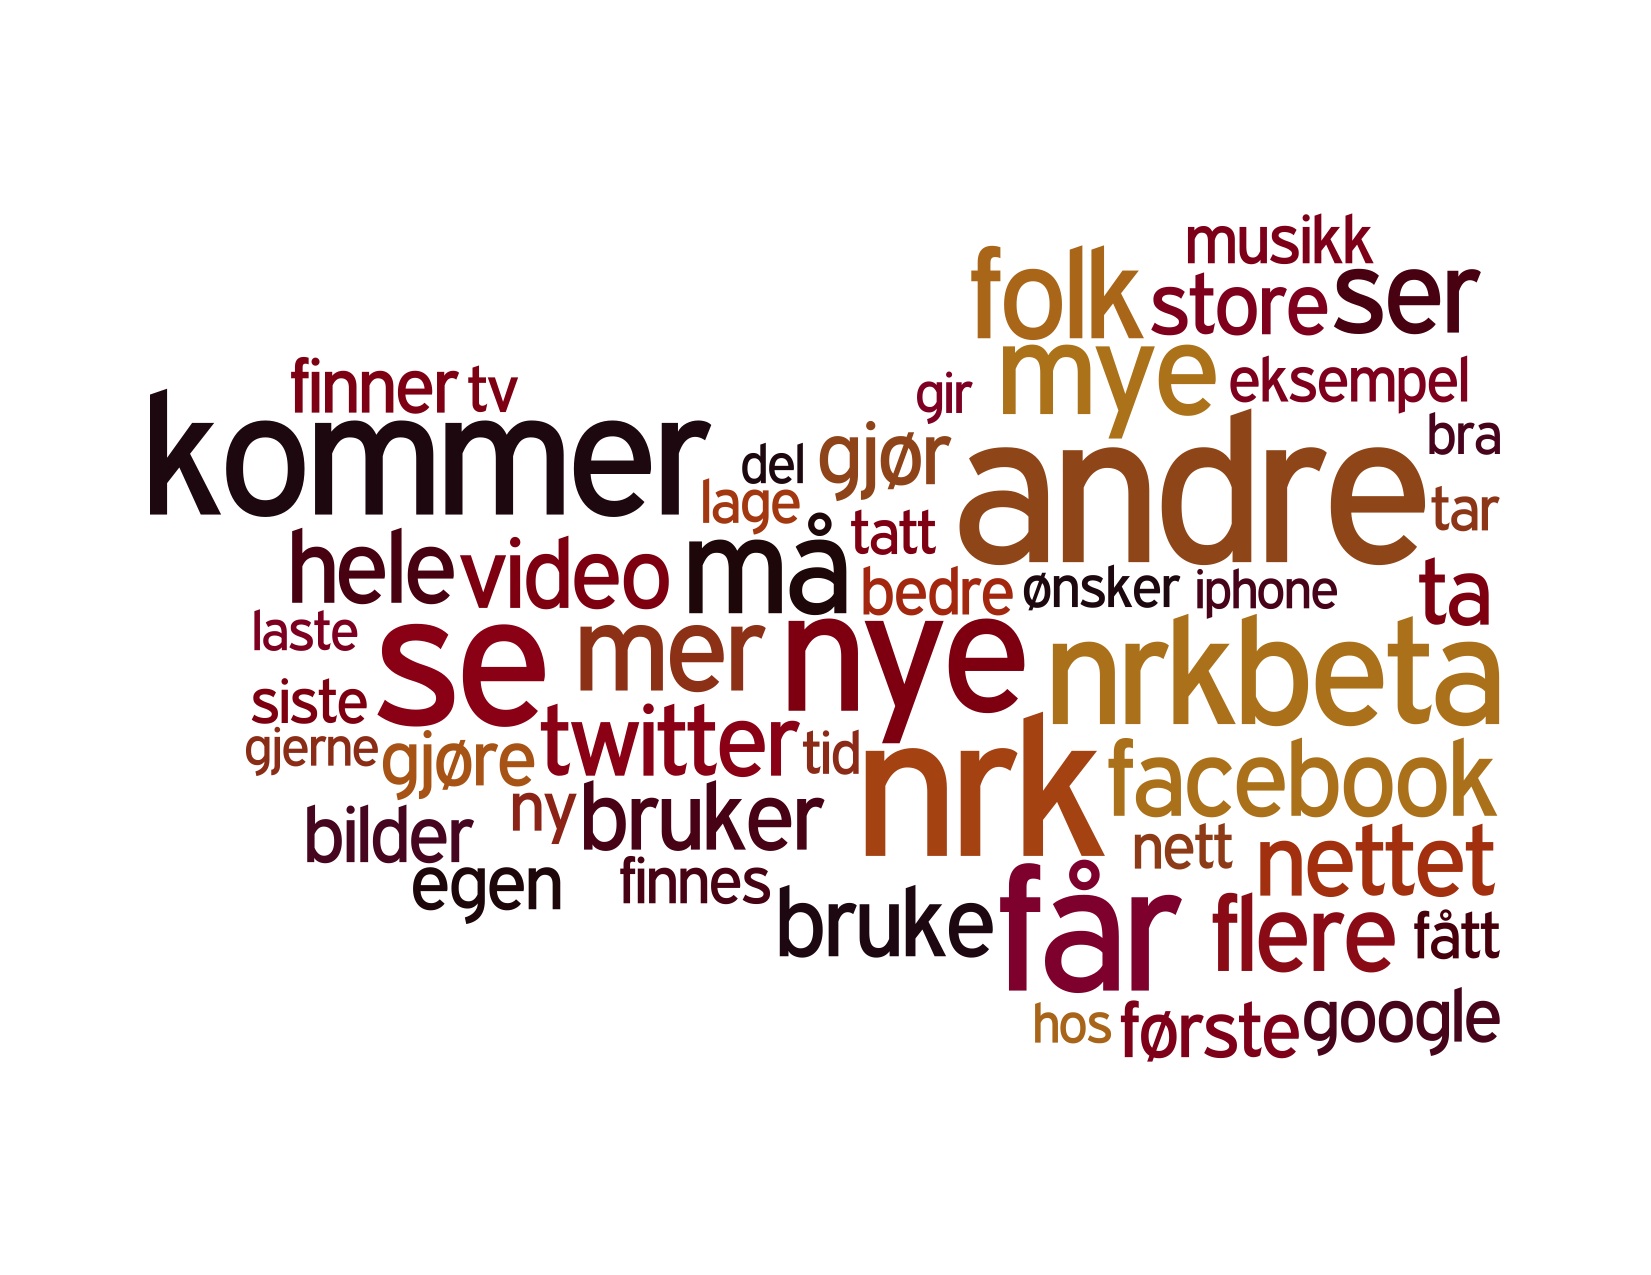 NRKbeta kommentarer Wordle